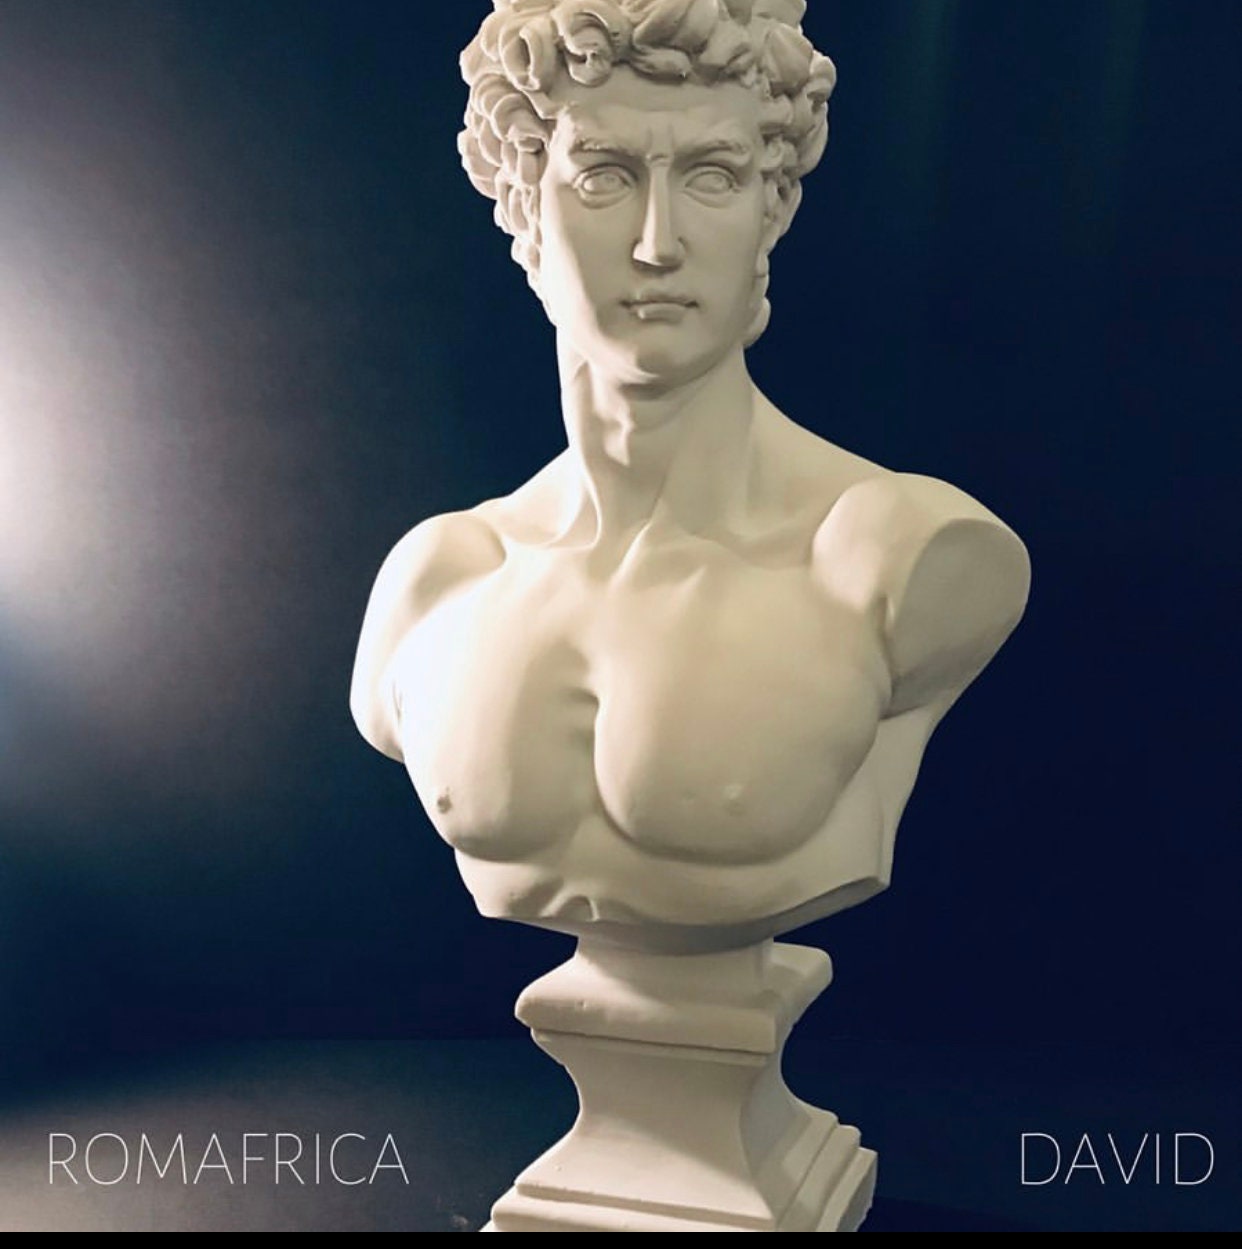 Eternal Splendor: Large David Bust Sculpture in Timeless White